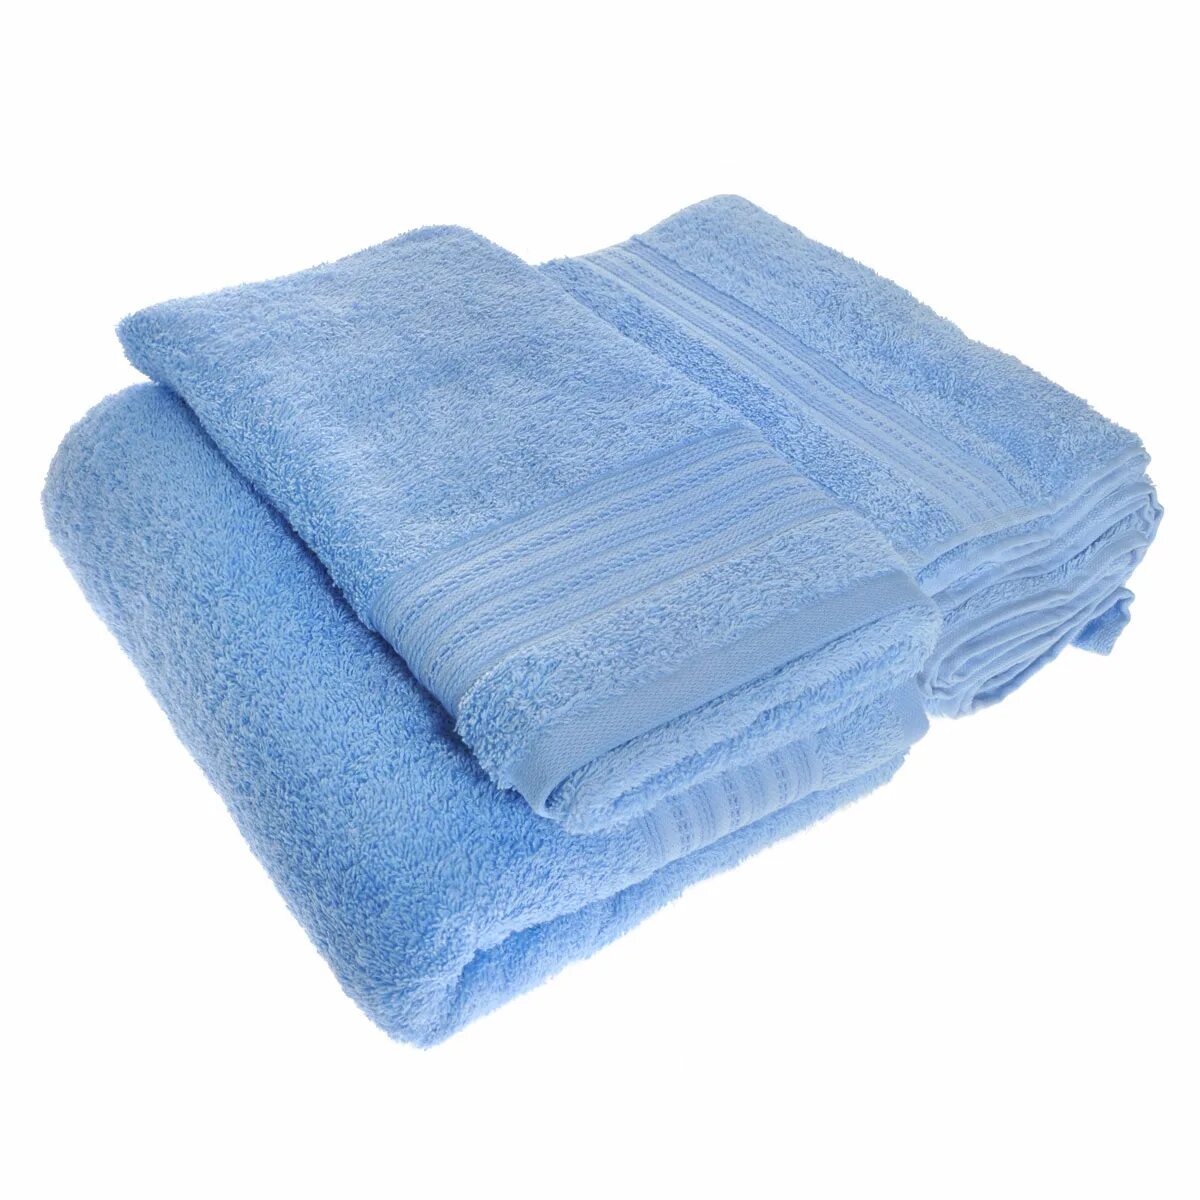 Купить полотенца махровые на озон. Махровые полотенца 2 шт. Полотенце whitex. Комплект полотенец 2 шт. Набор махровых полотенец 2 шт.